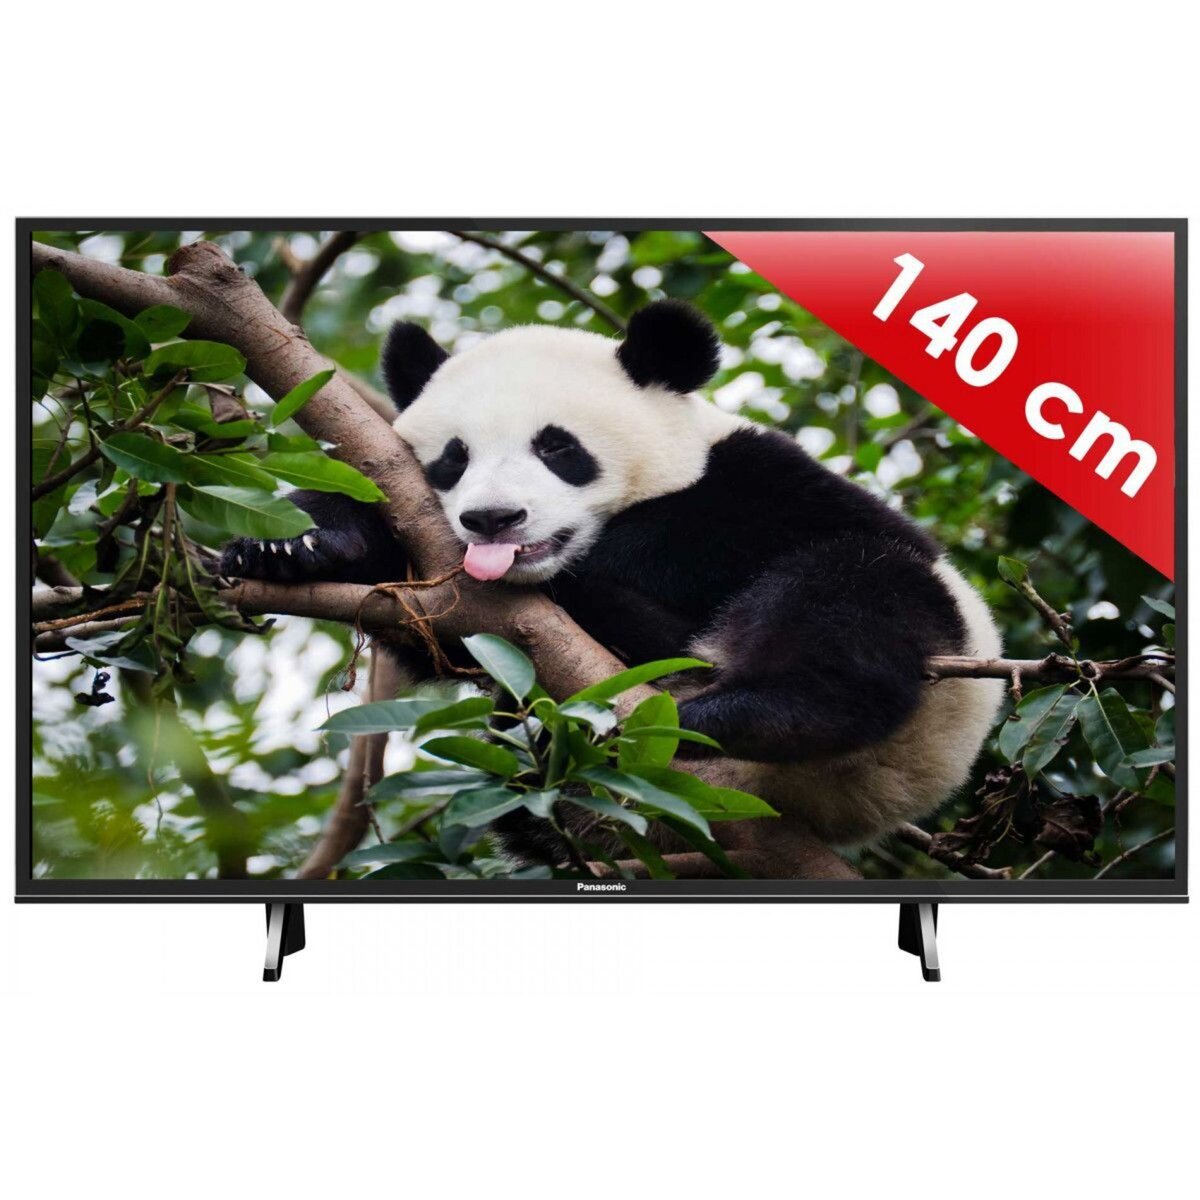 PANASONIC 55FX600 TV LED  4K UHD  139 cm  HDR Smart TV